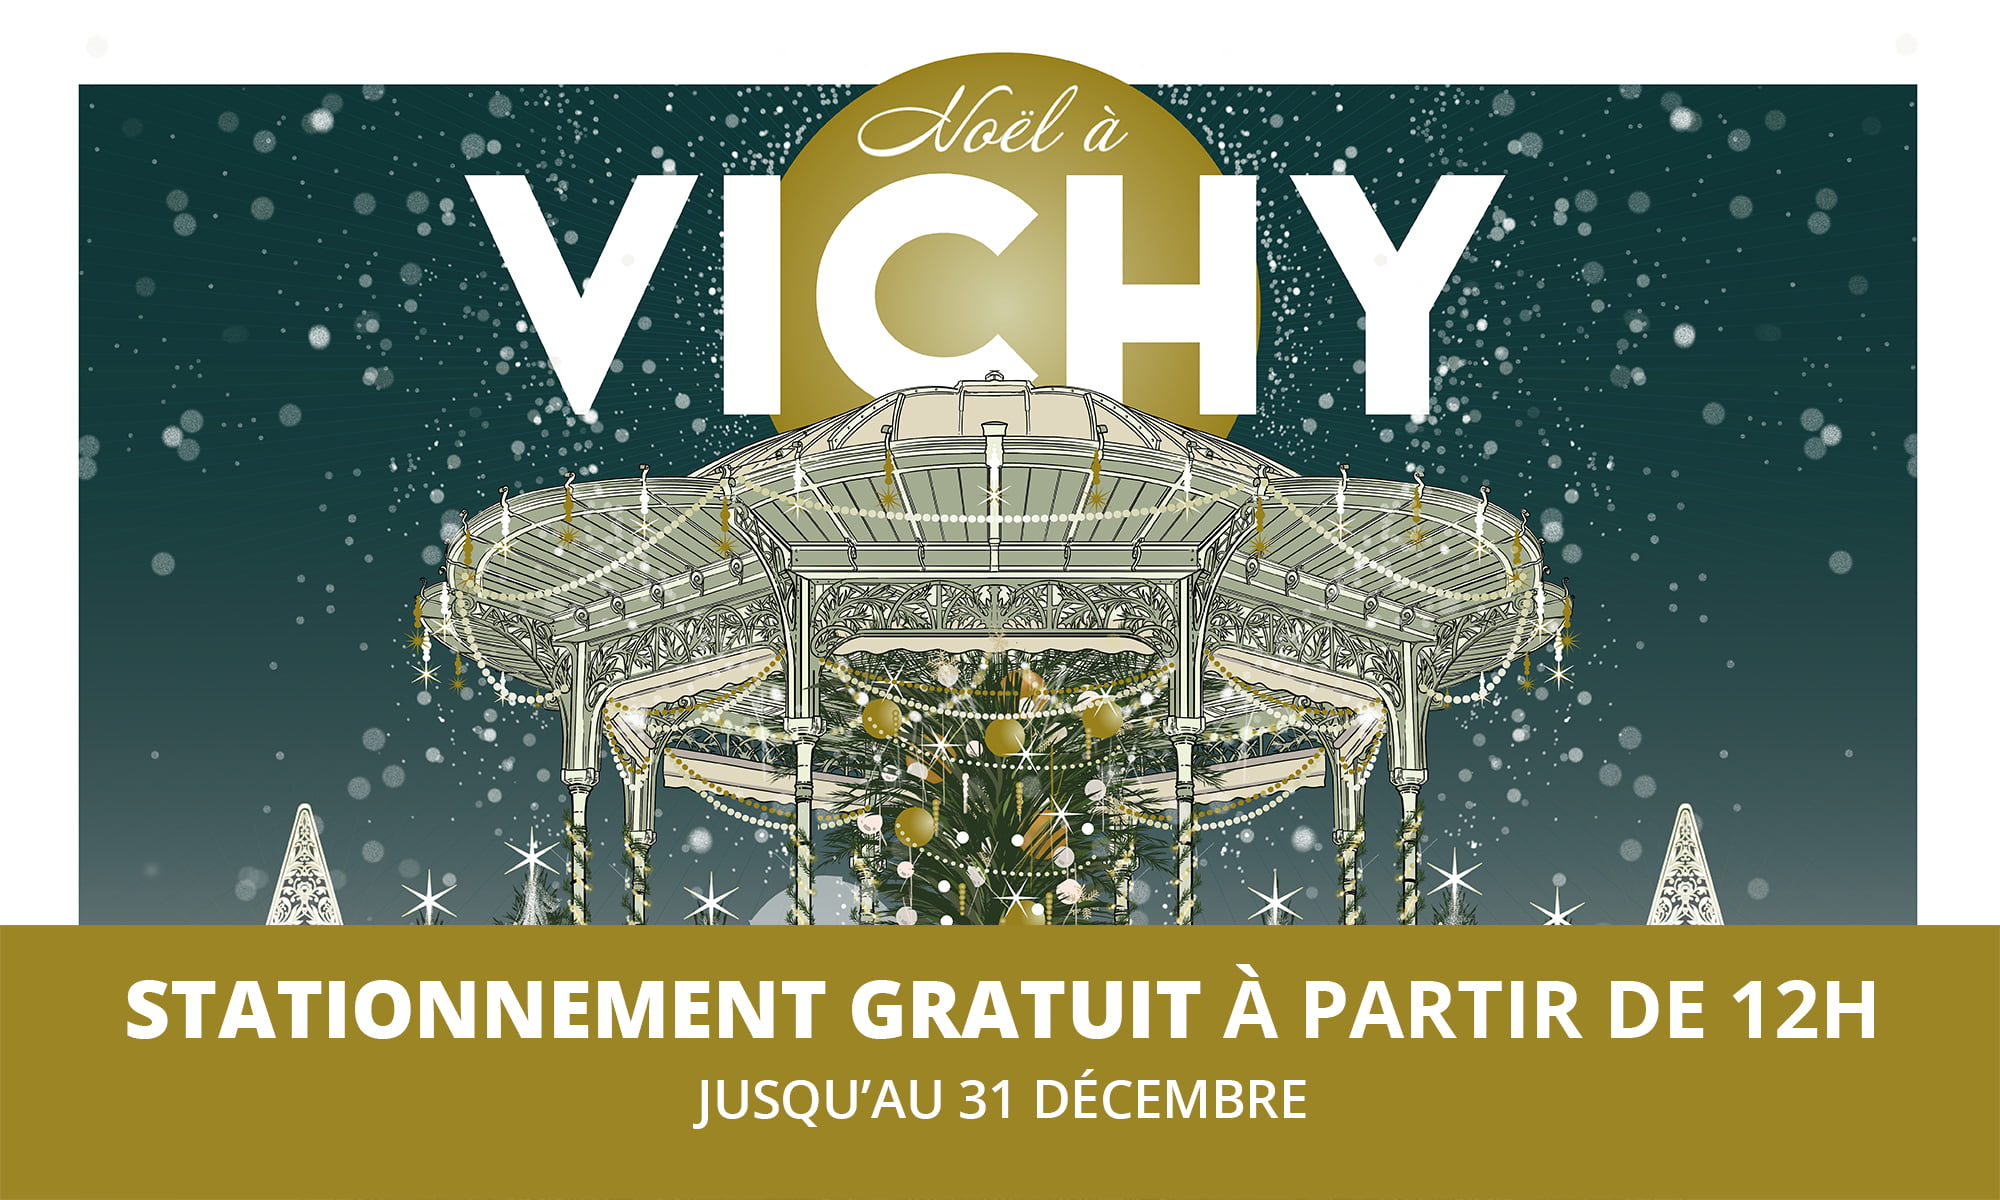 Stationnement gratuit à Vichy / Noël 2020